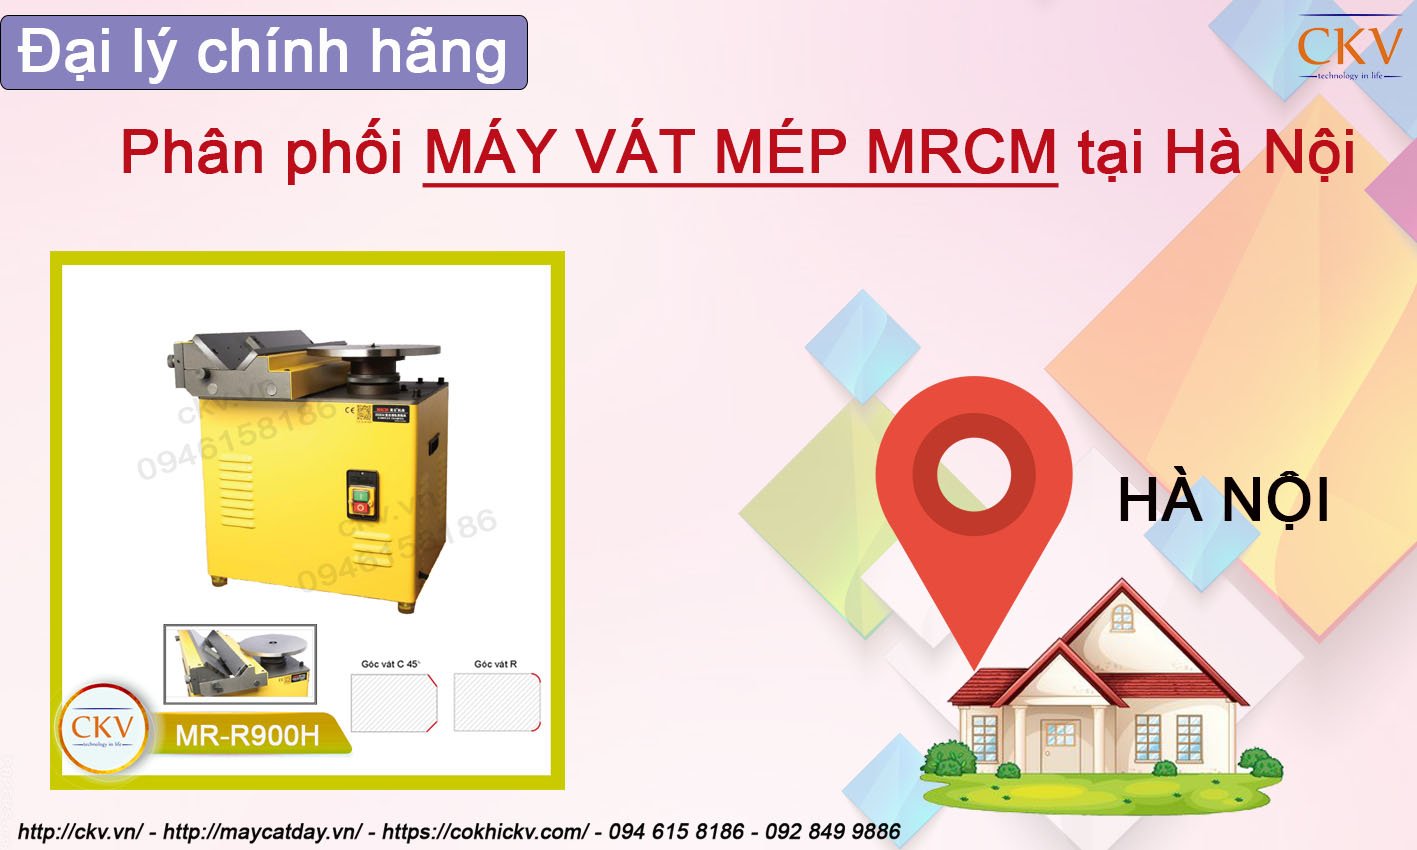 Đại ly chính hãng phân phối máy vát mép MRCM tại Hà Nội